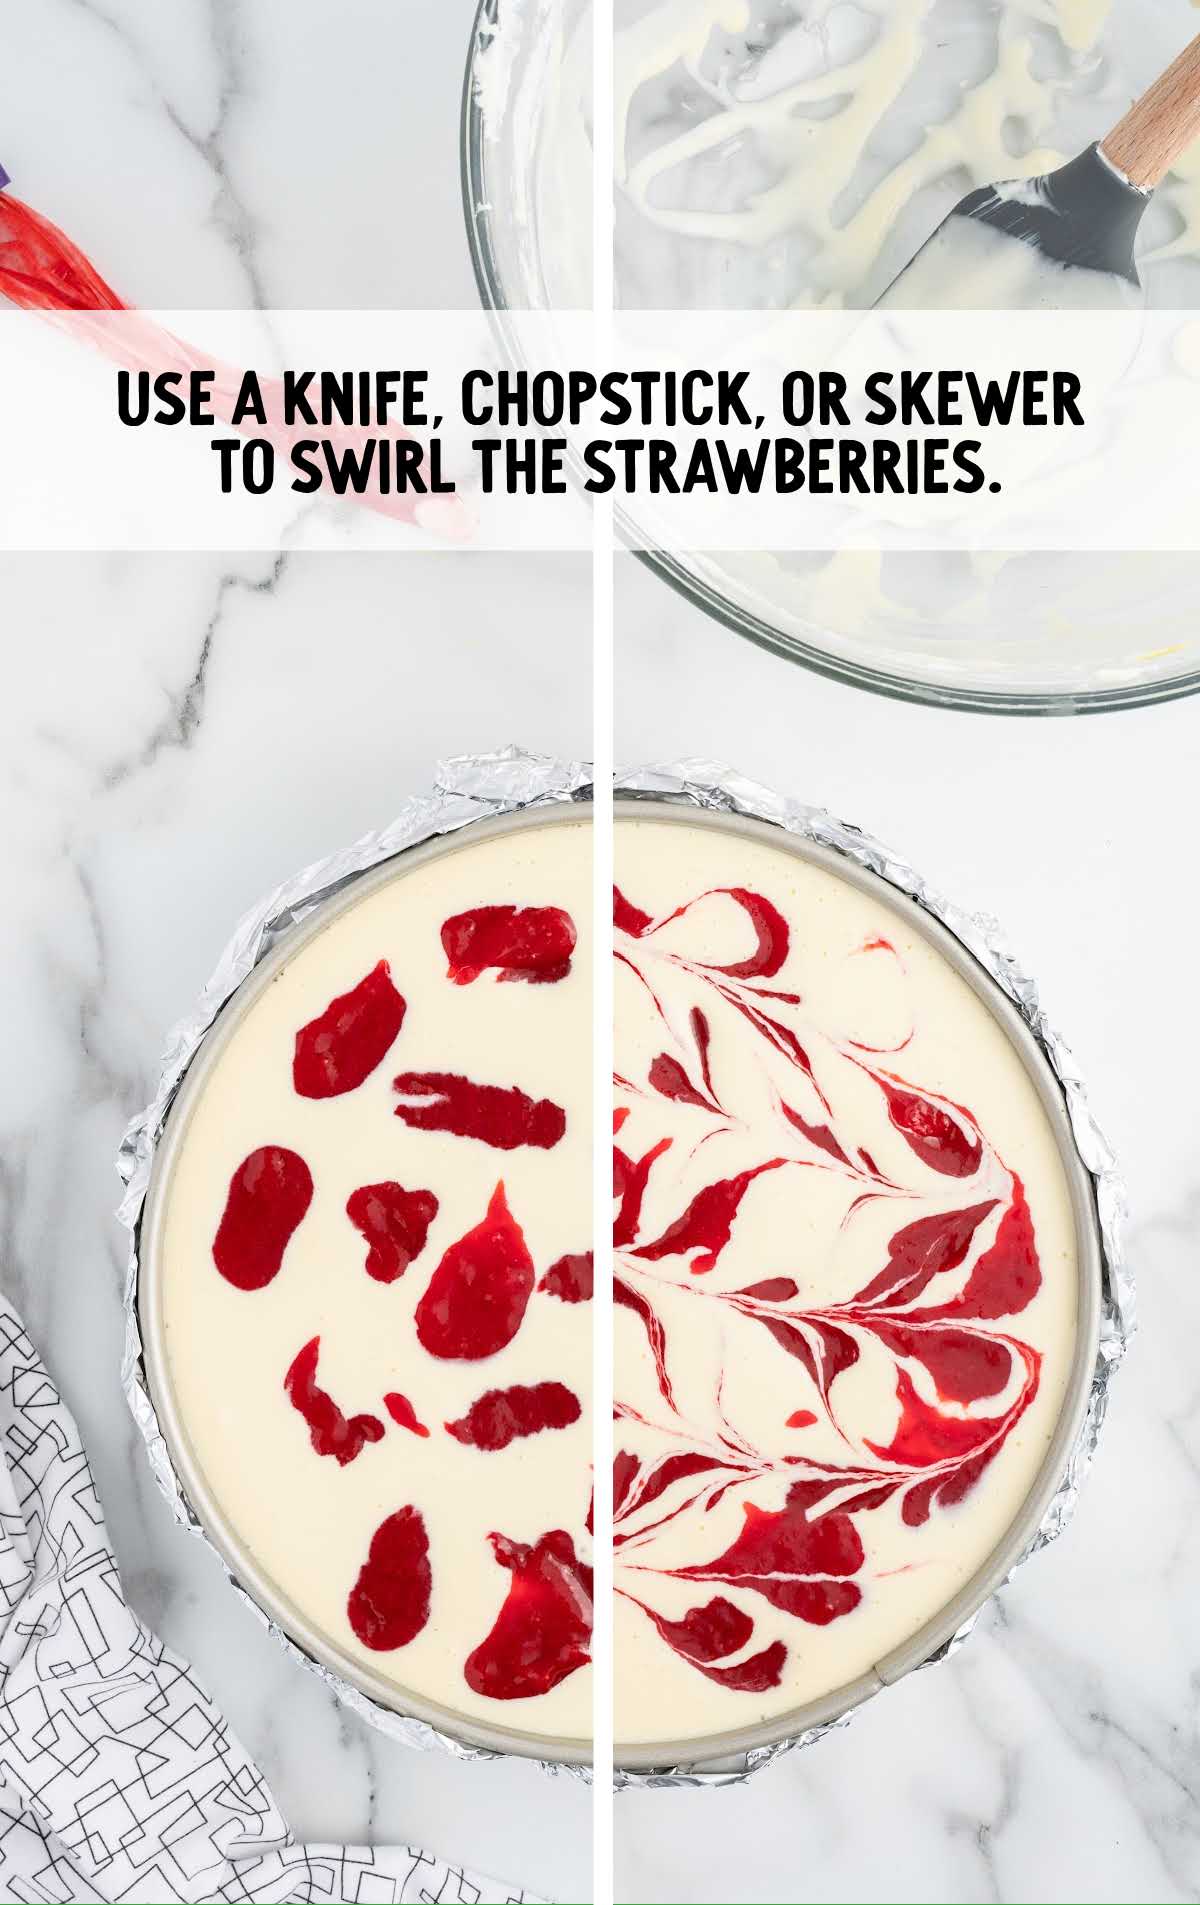 swirl strawberries using knifes, chopsticks, or skewer